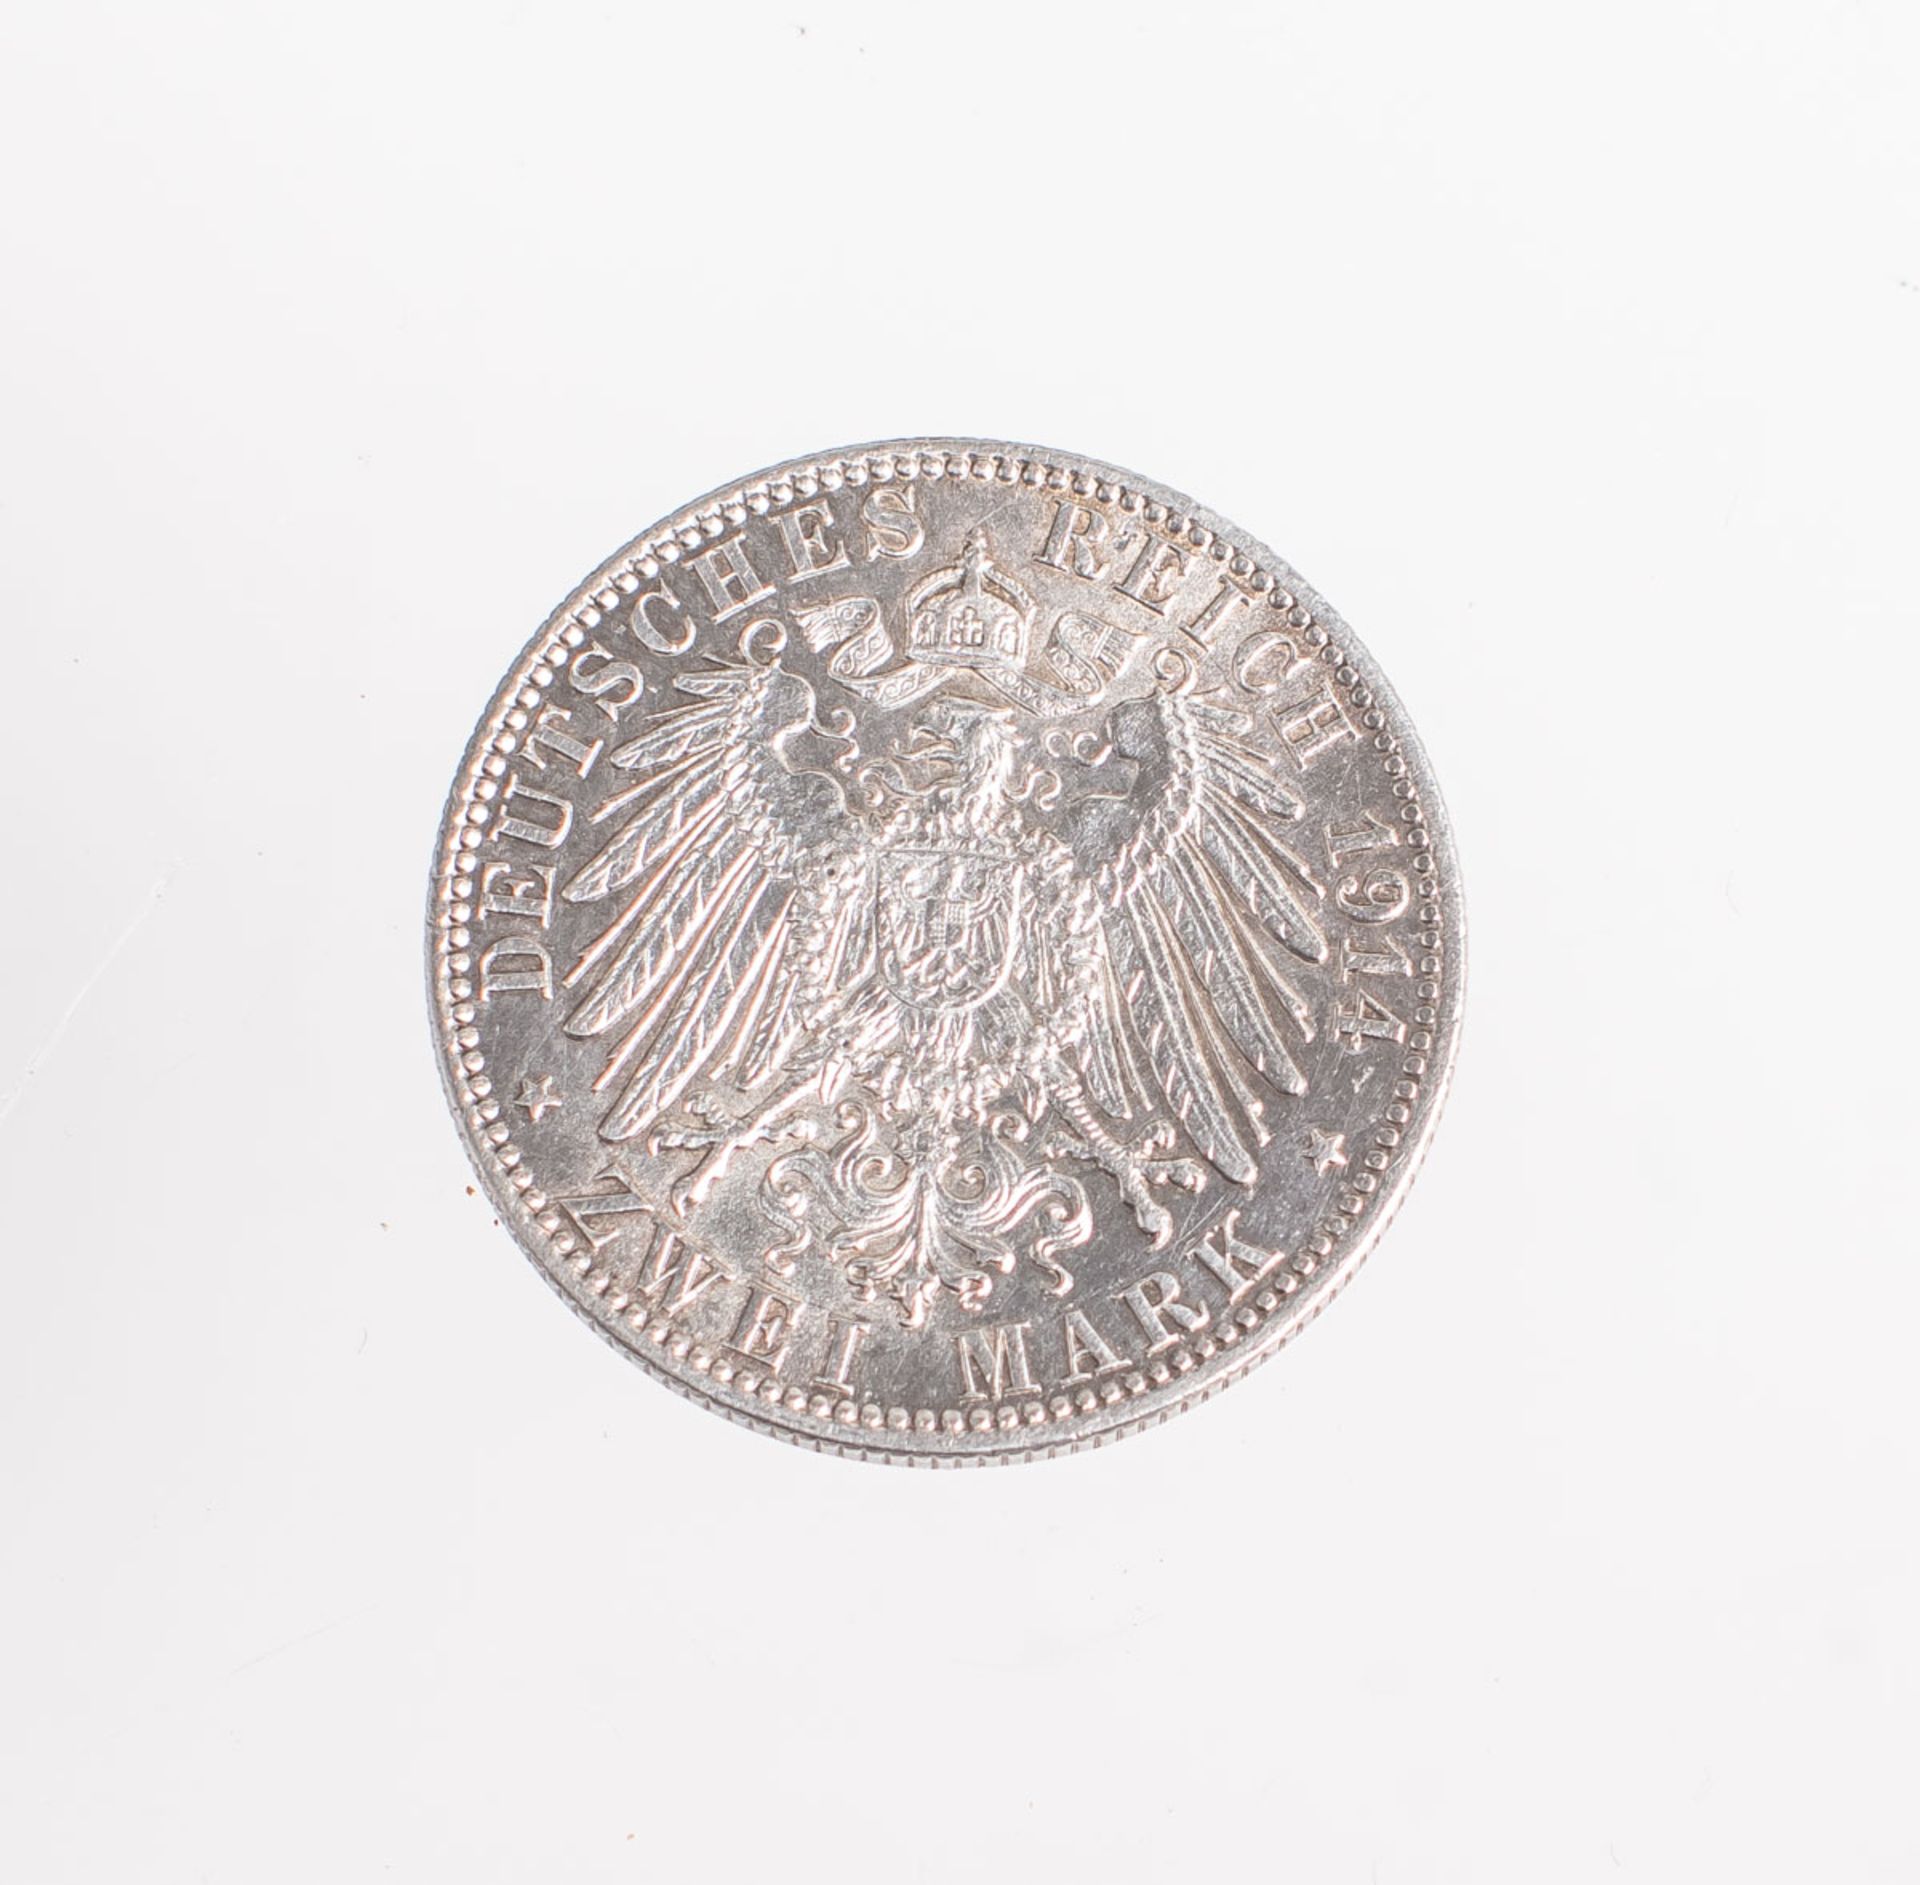 2-Mark-Münze "Freie und Hansestadt Hamburg" (1914), Deutsches Reich, Münzprägestätte: J. Vz.